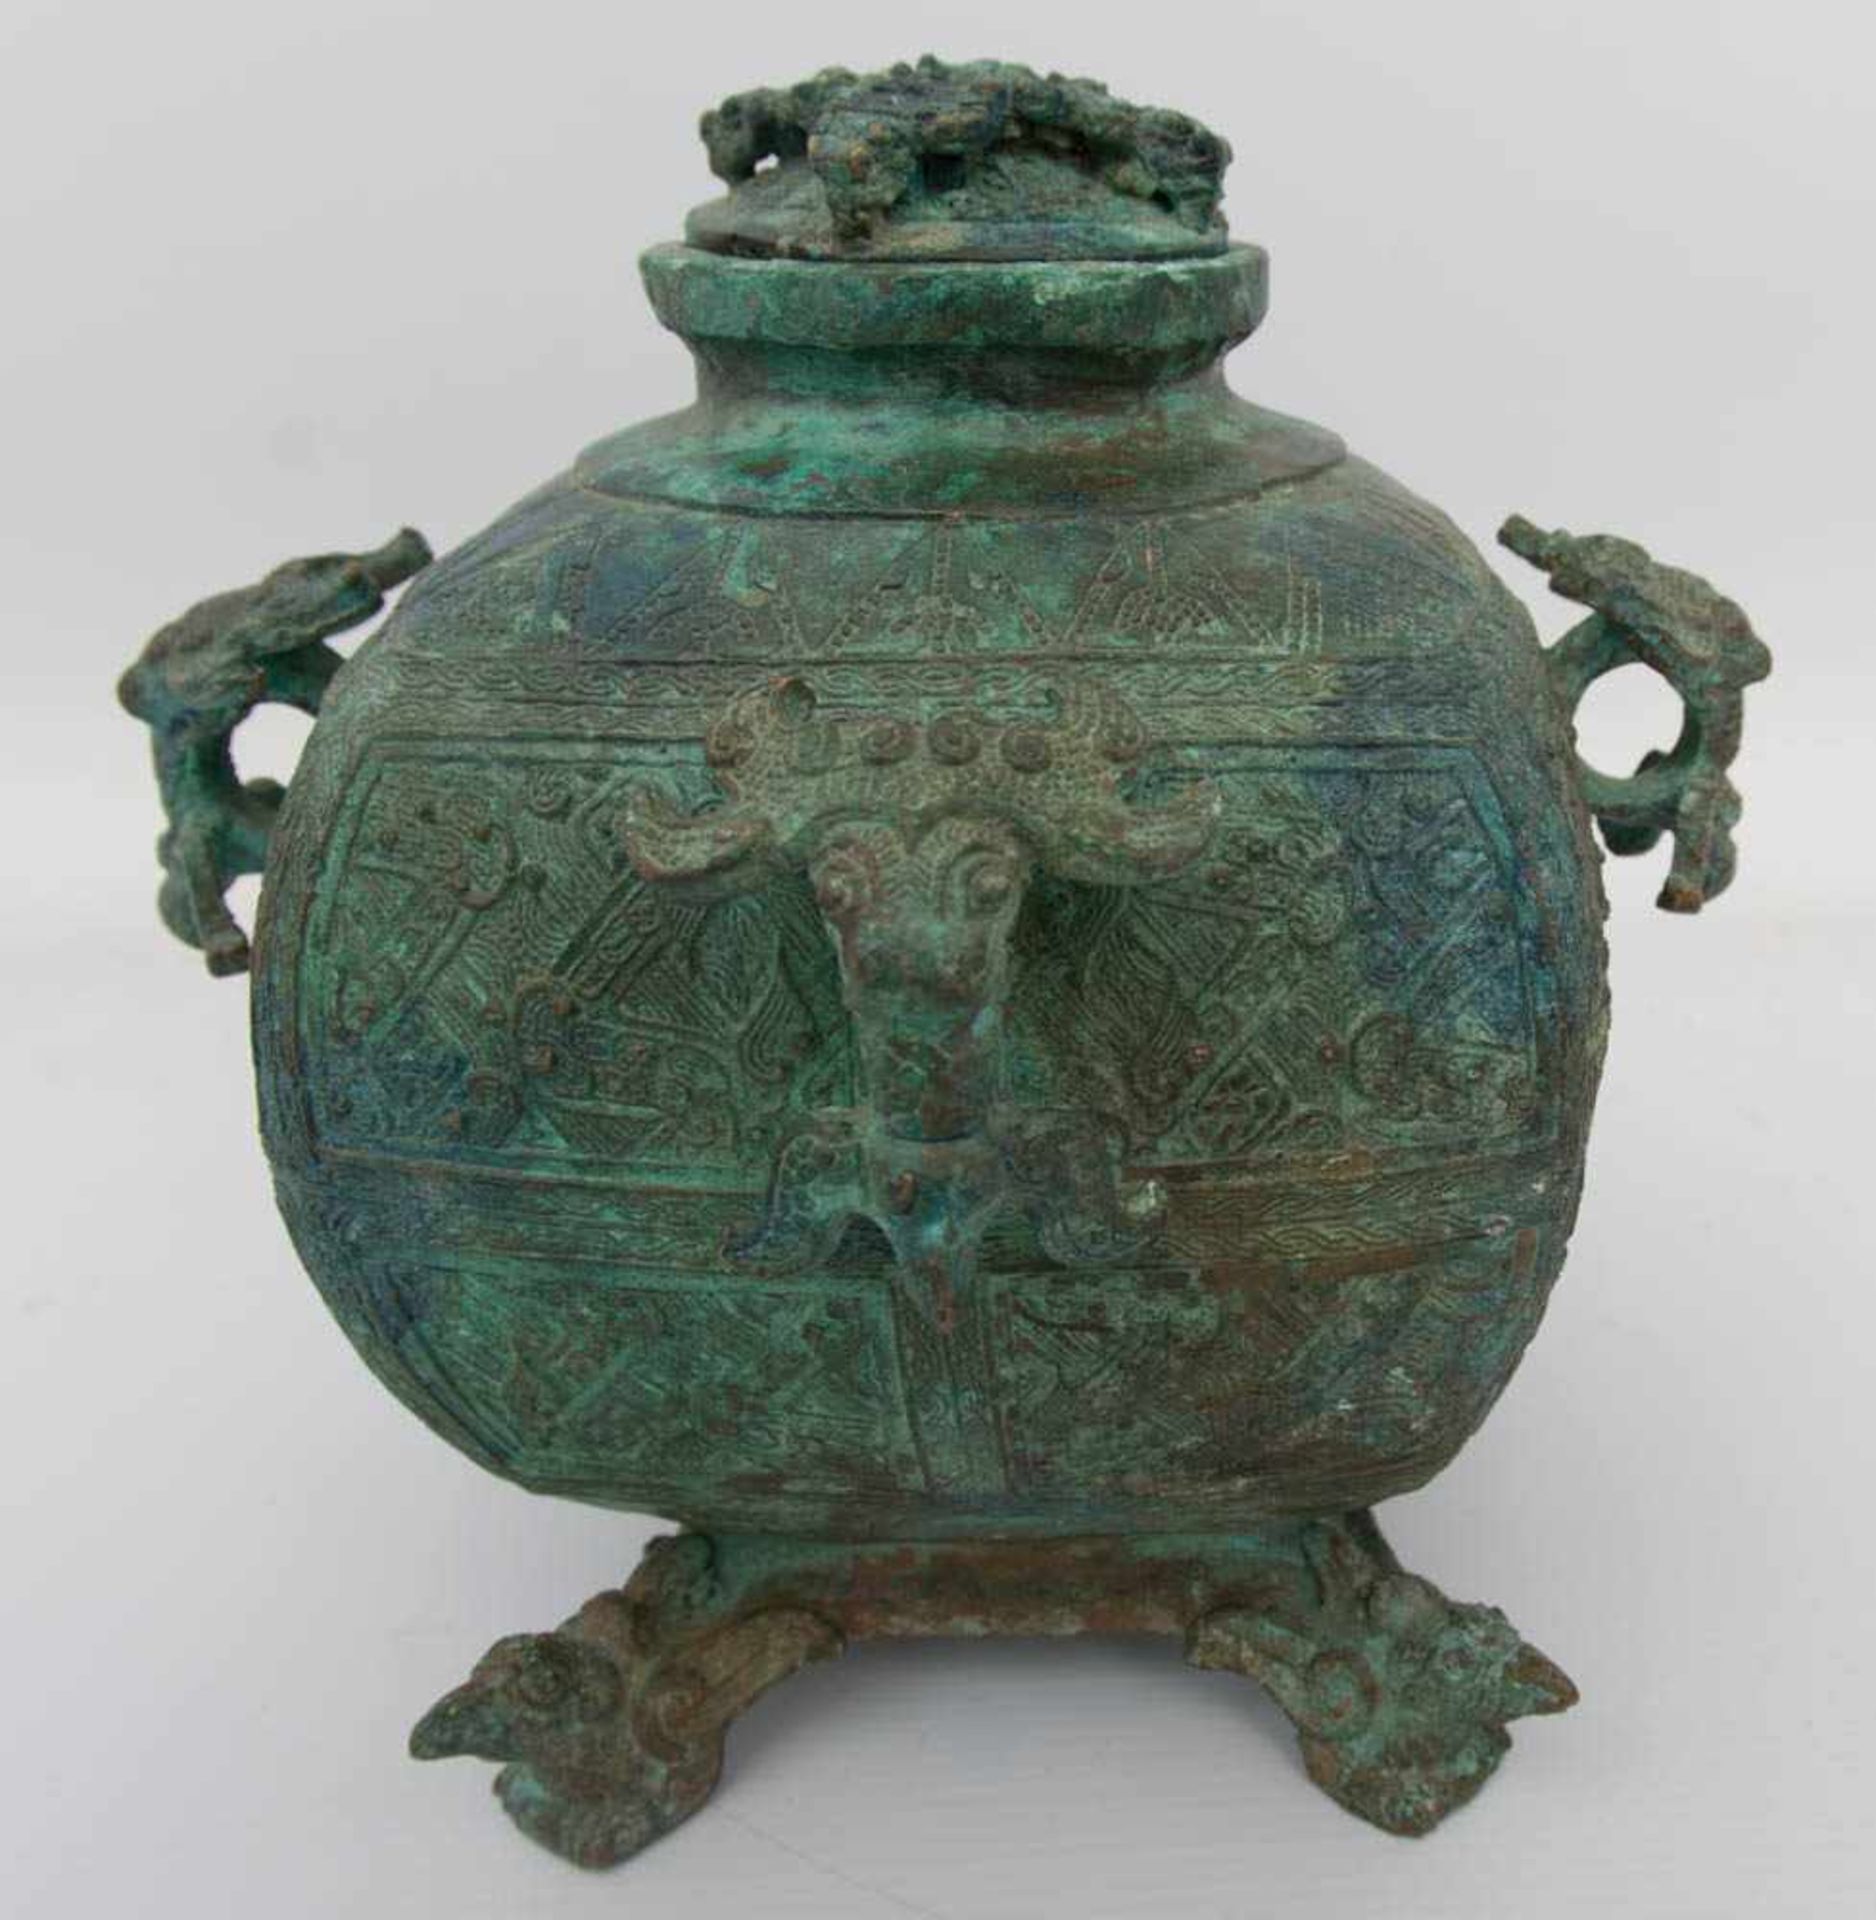 SÜDOSTASIEN, Bronzegefäß auf vier Füßen, Bronze, undatiert.Am Hals dreifach signiert, starke Patina, - Image 2 of 6